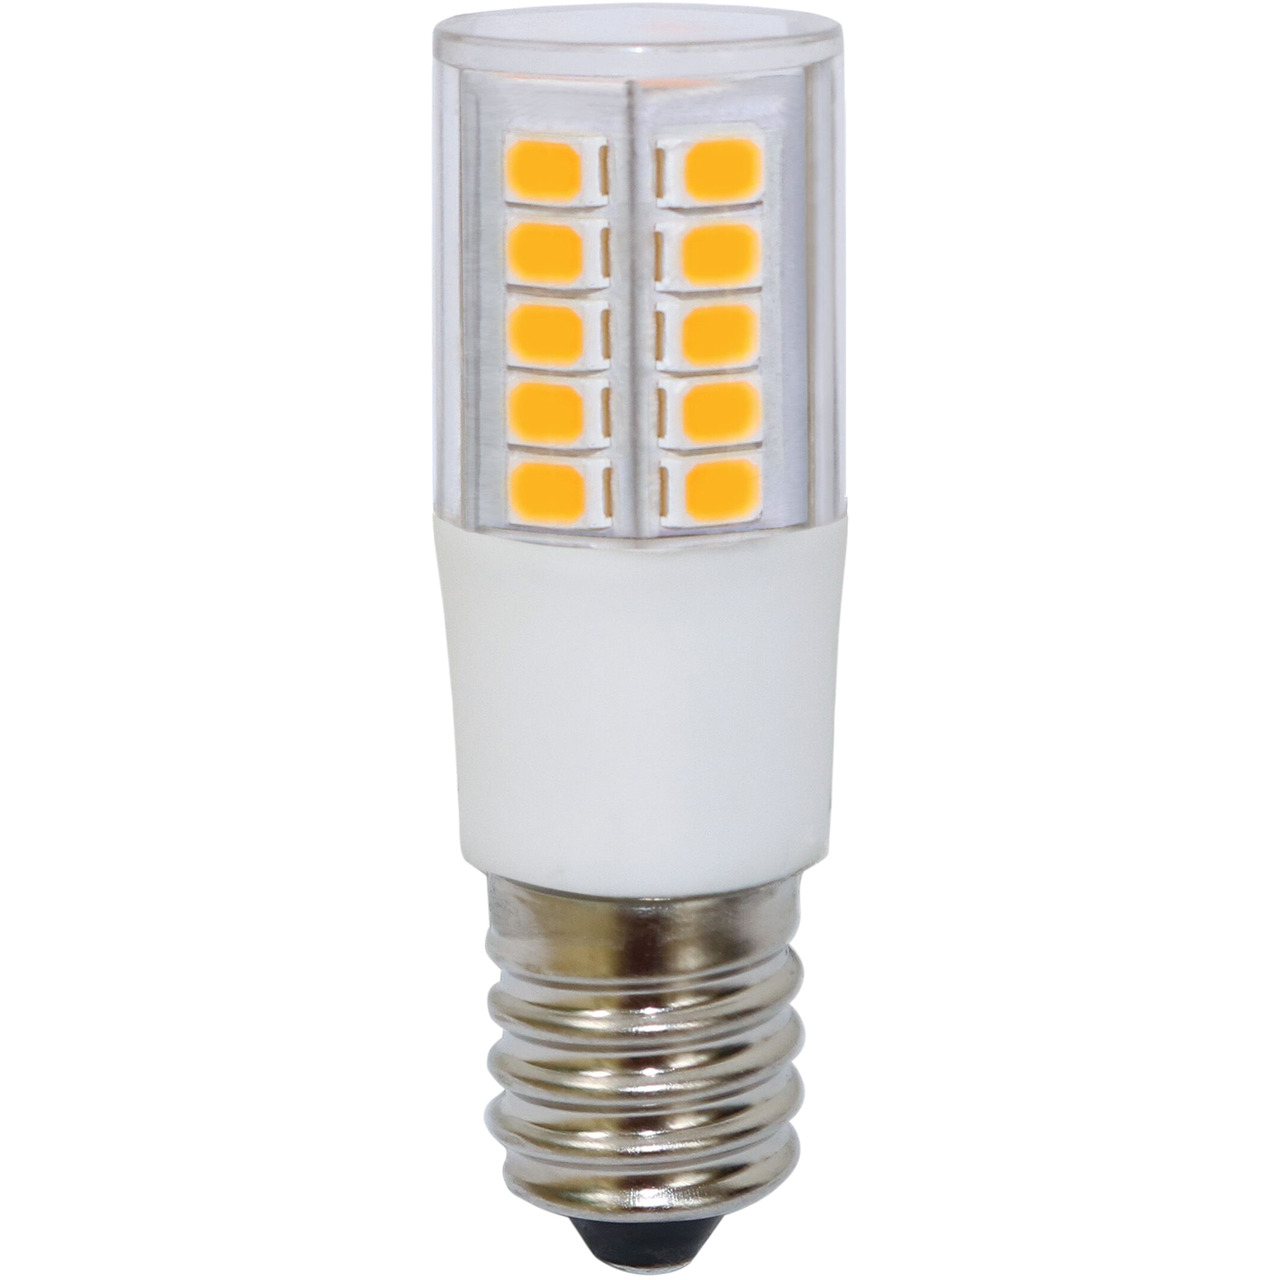 LIGHTME 5-5-W-T20-LED-Kolbenlampe E14- warmweiss unter Beleuchtung